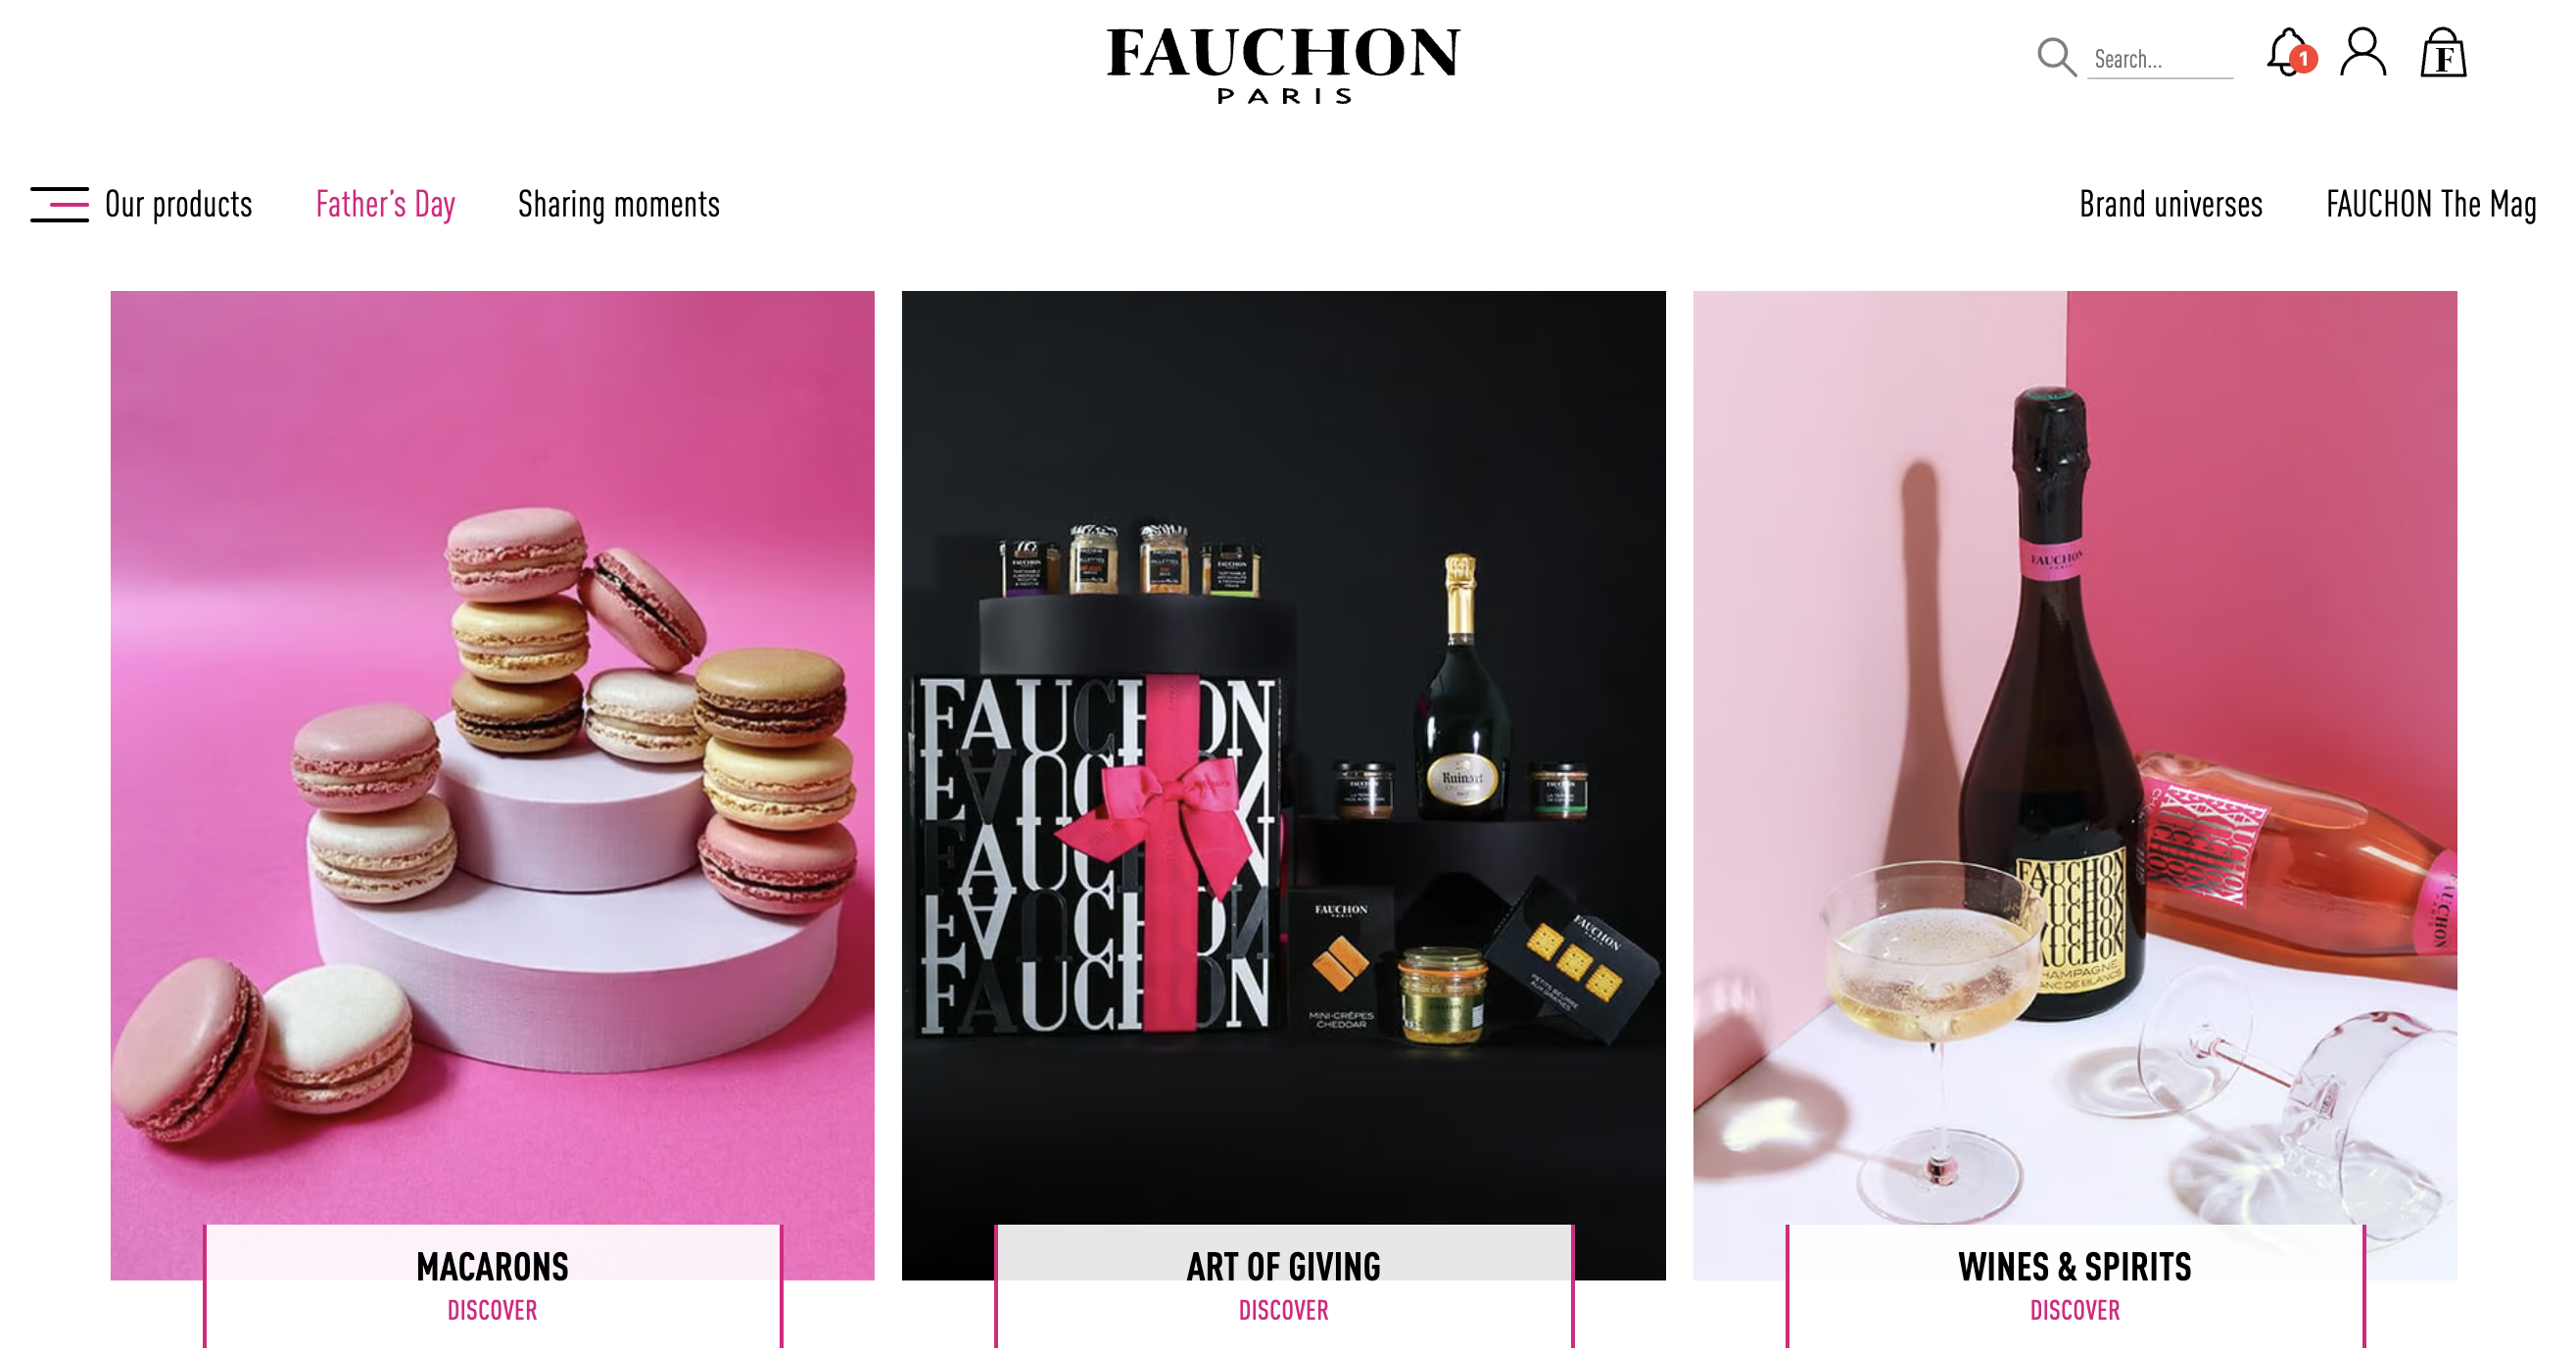 法国奢华美食品牌 Fauchon 被饼干制造商 Galapagos 收购